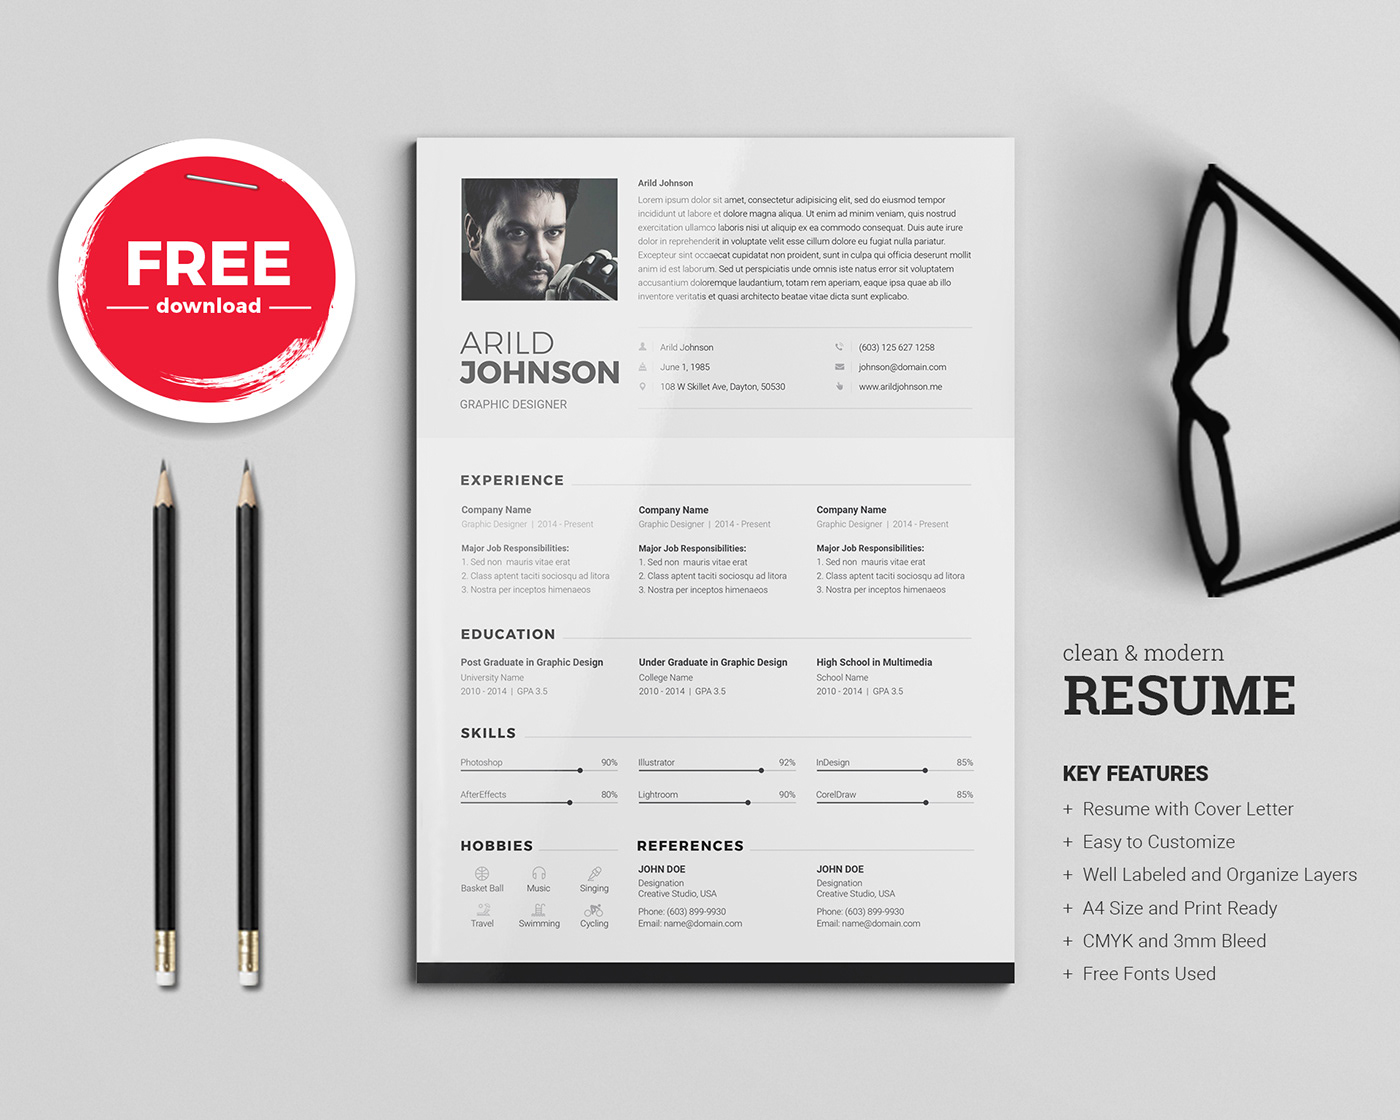 Free Resume